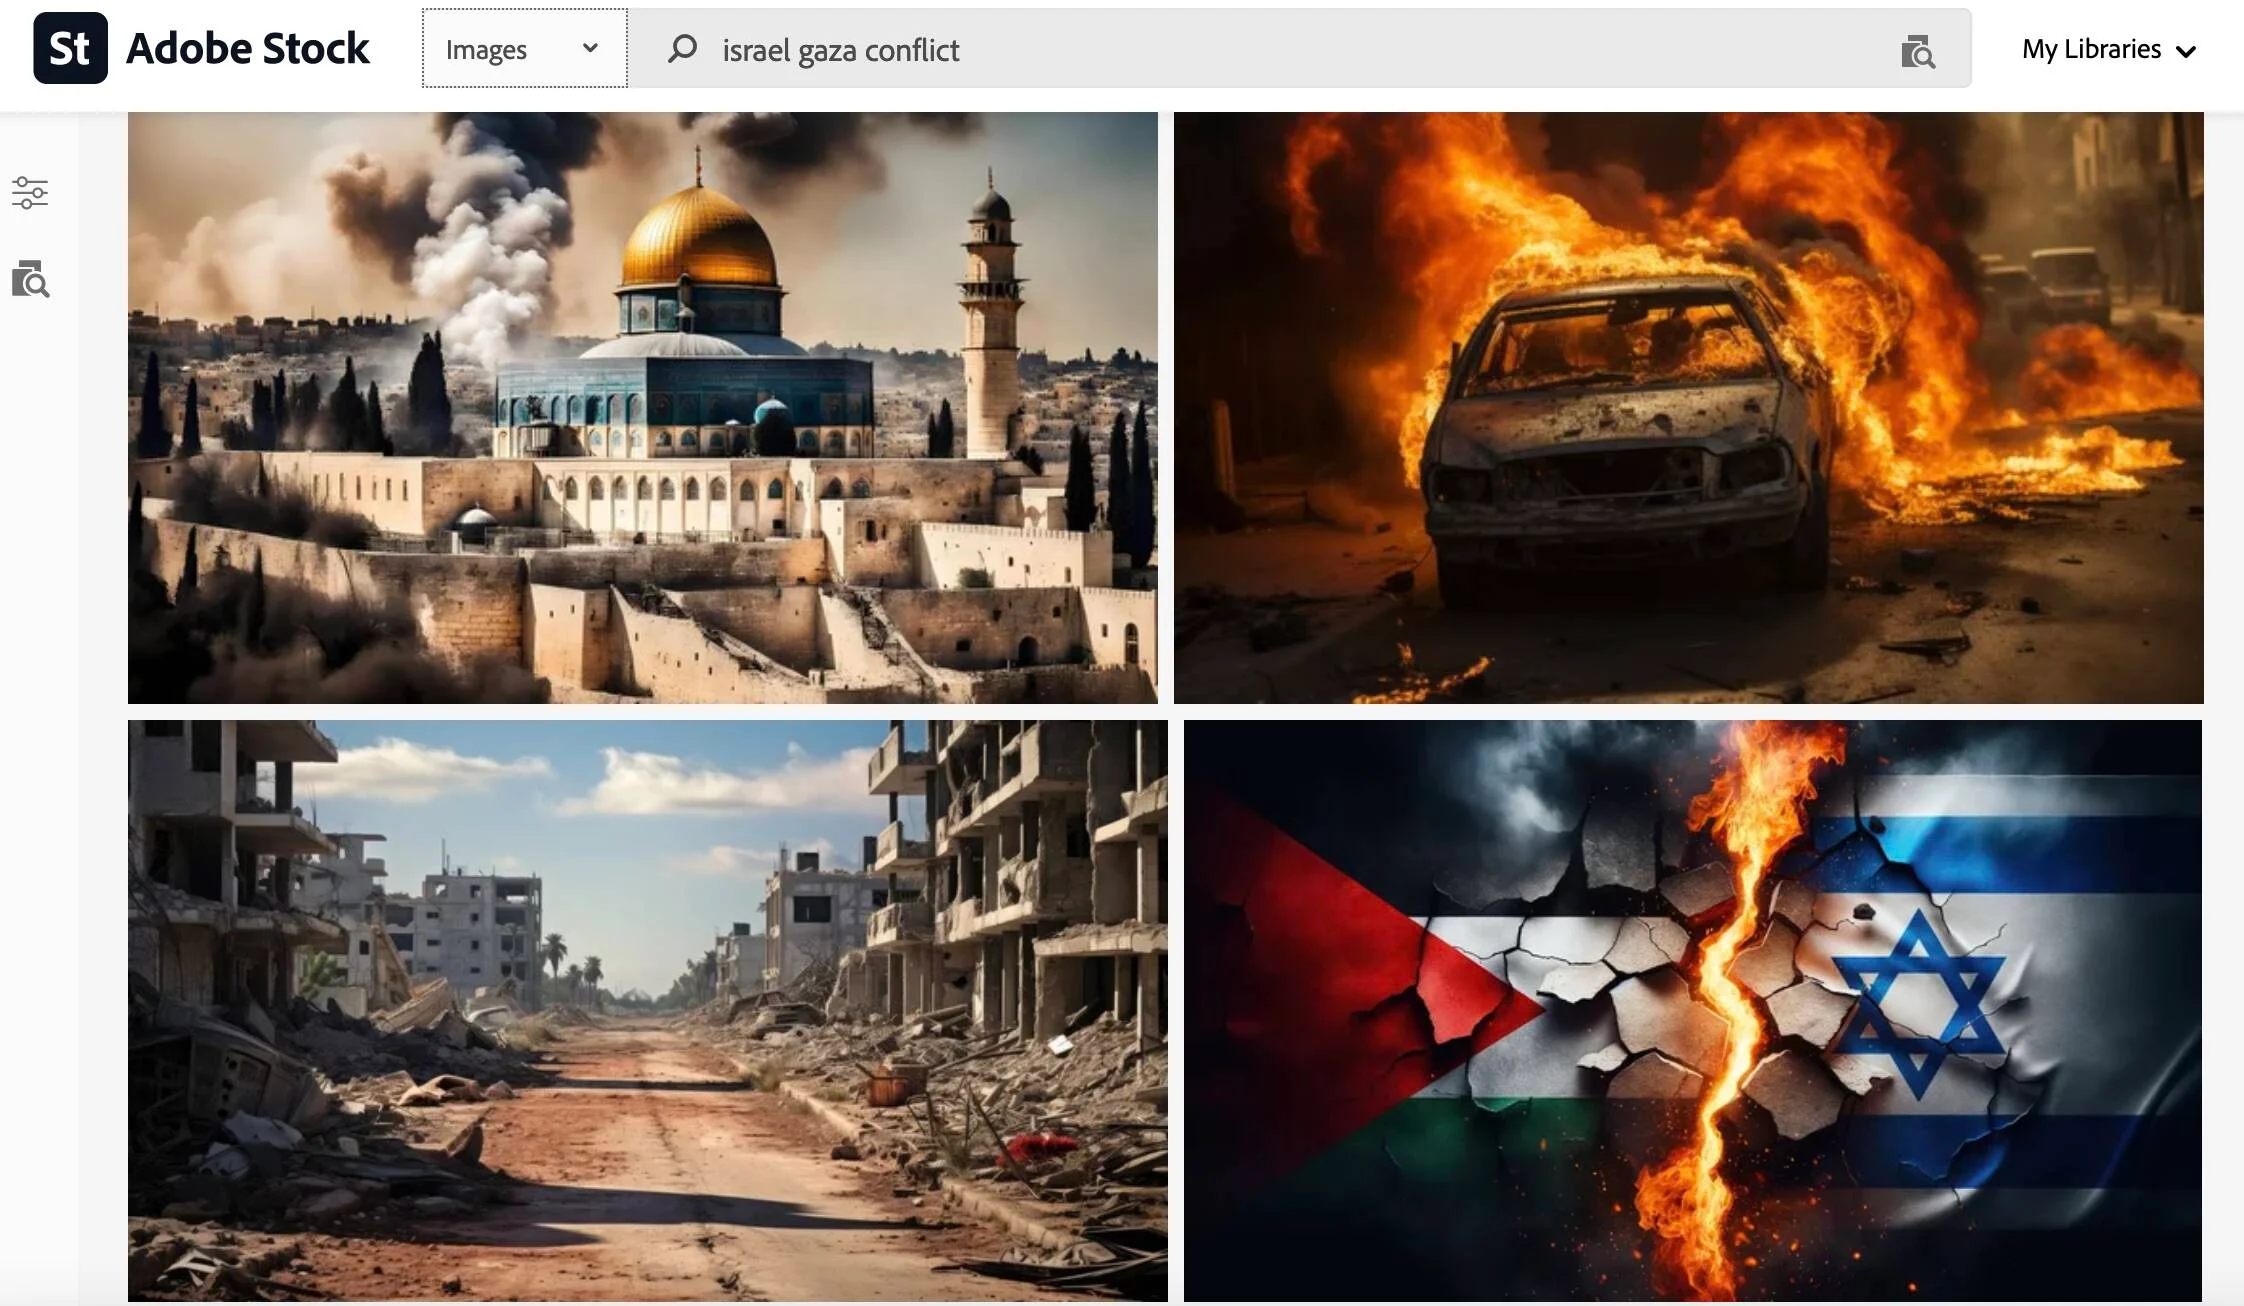 Adobe vend des images de la guerre entre Israël et le Hamas générées par l'intelligence artificielle et présentées comme réelles dans les reportages.-2